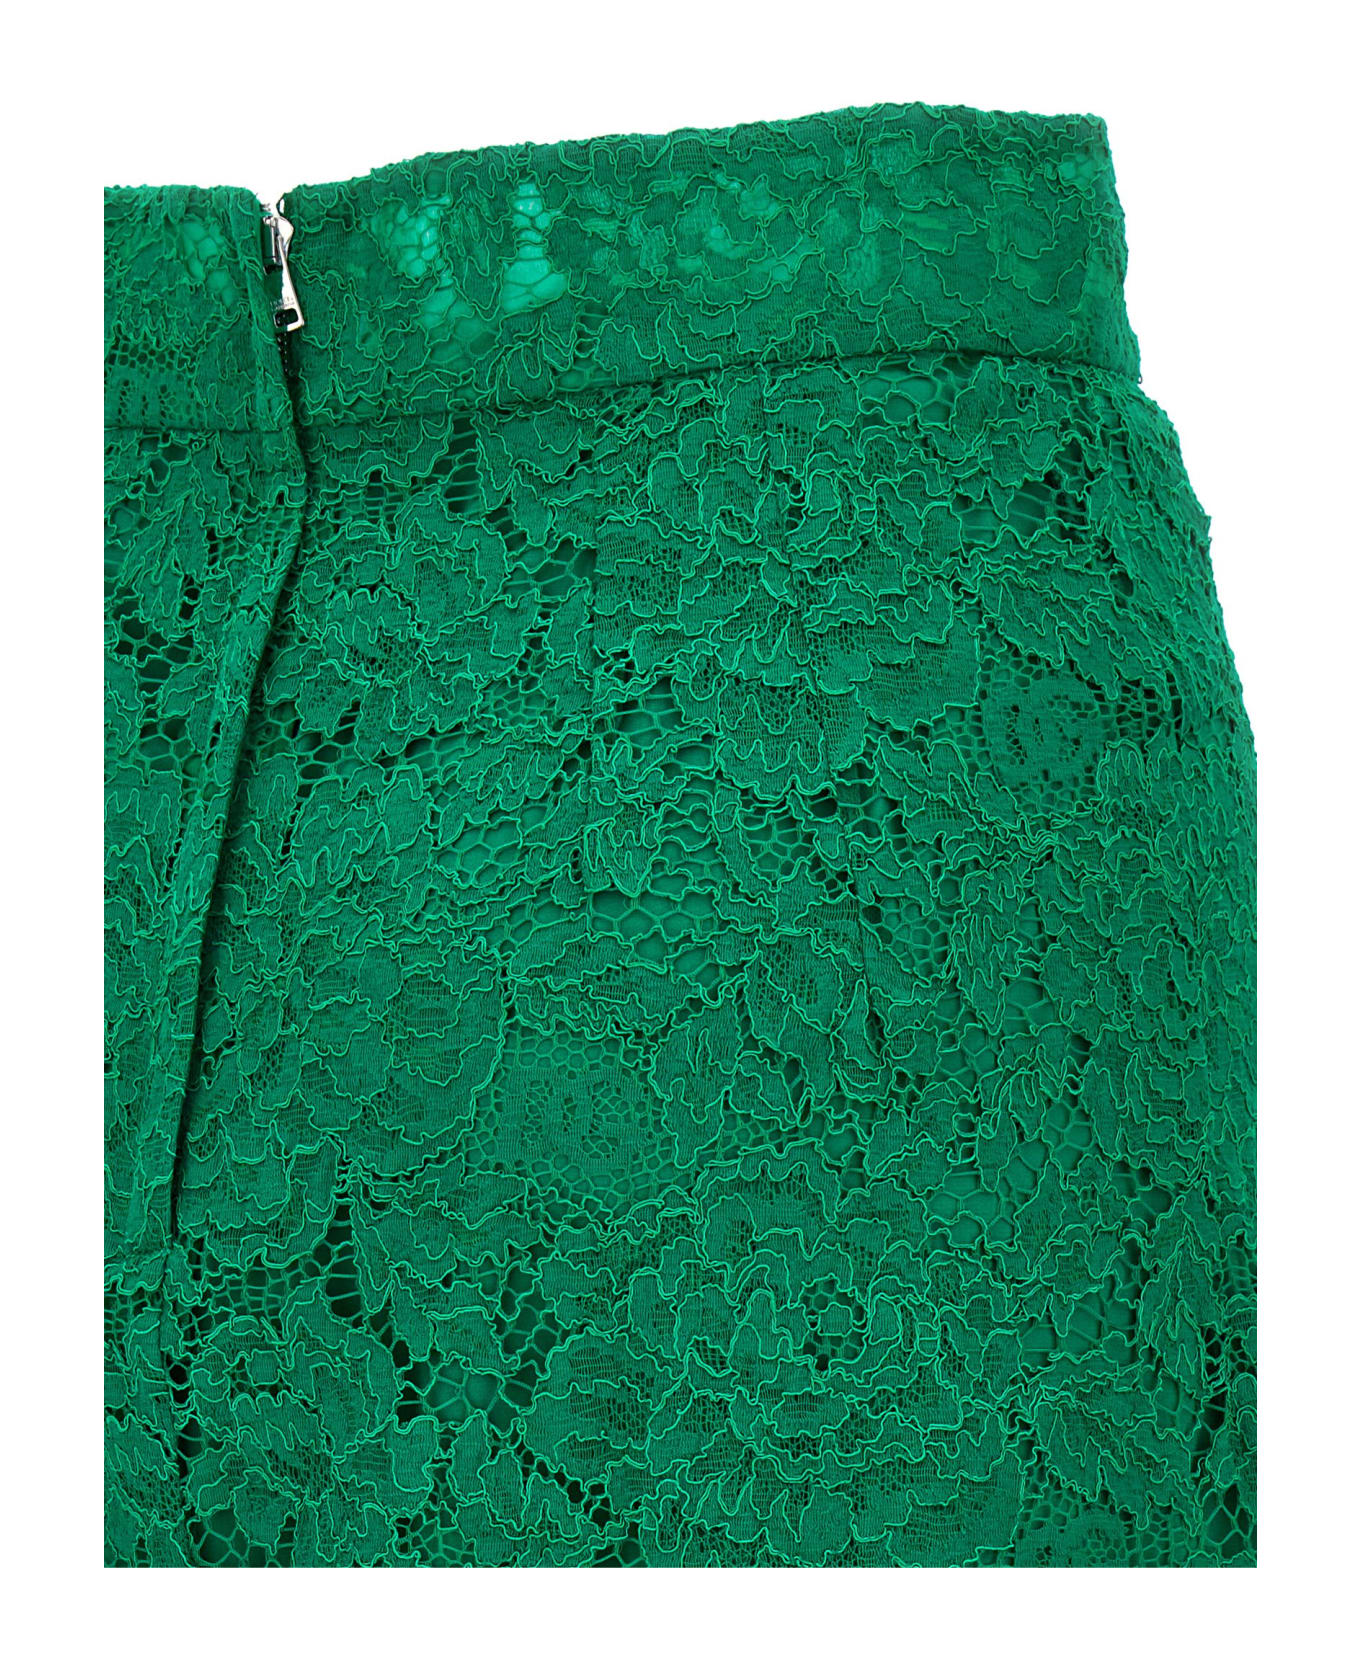 Dolce & Gabbana Lace Midi Skirt - Green